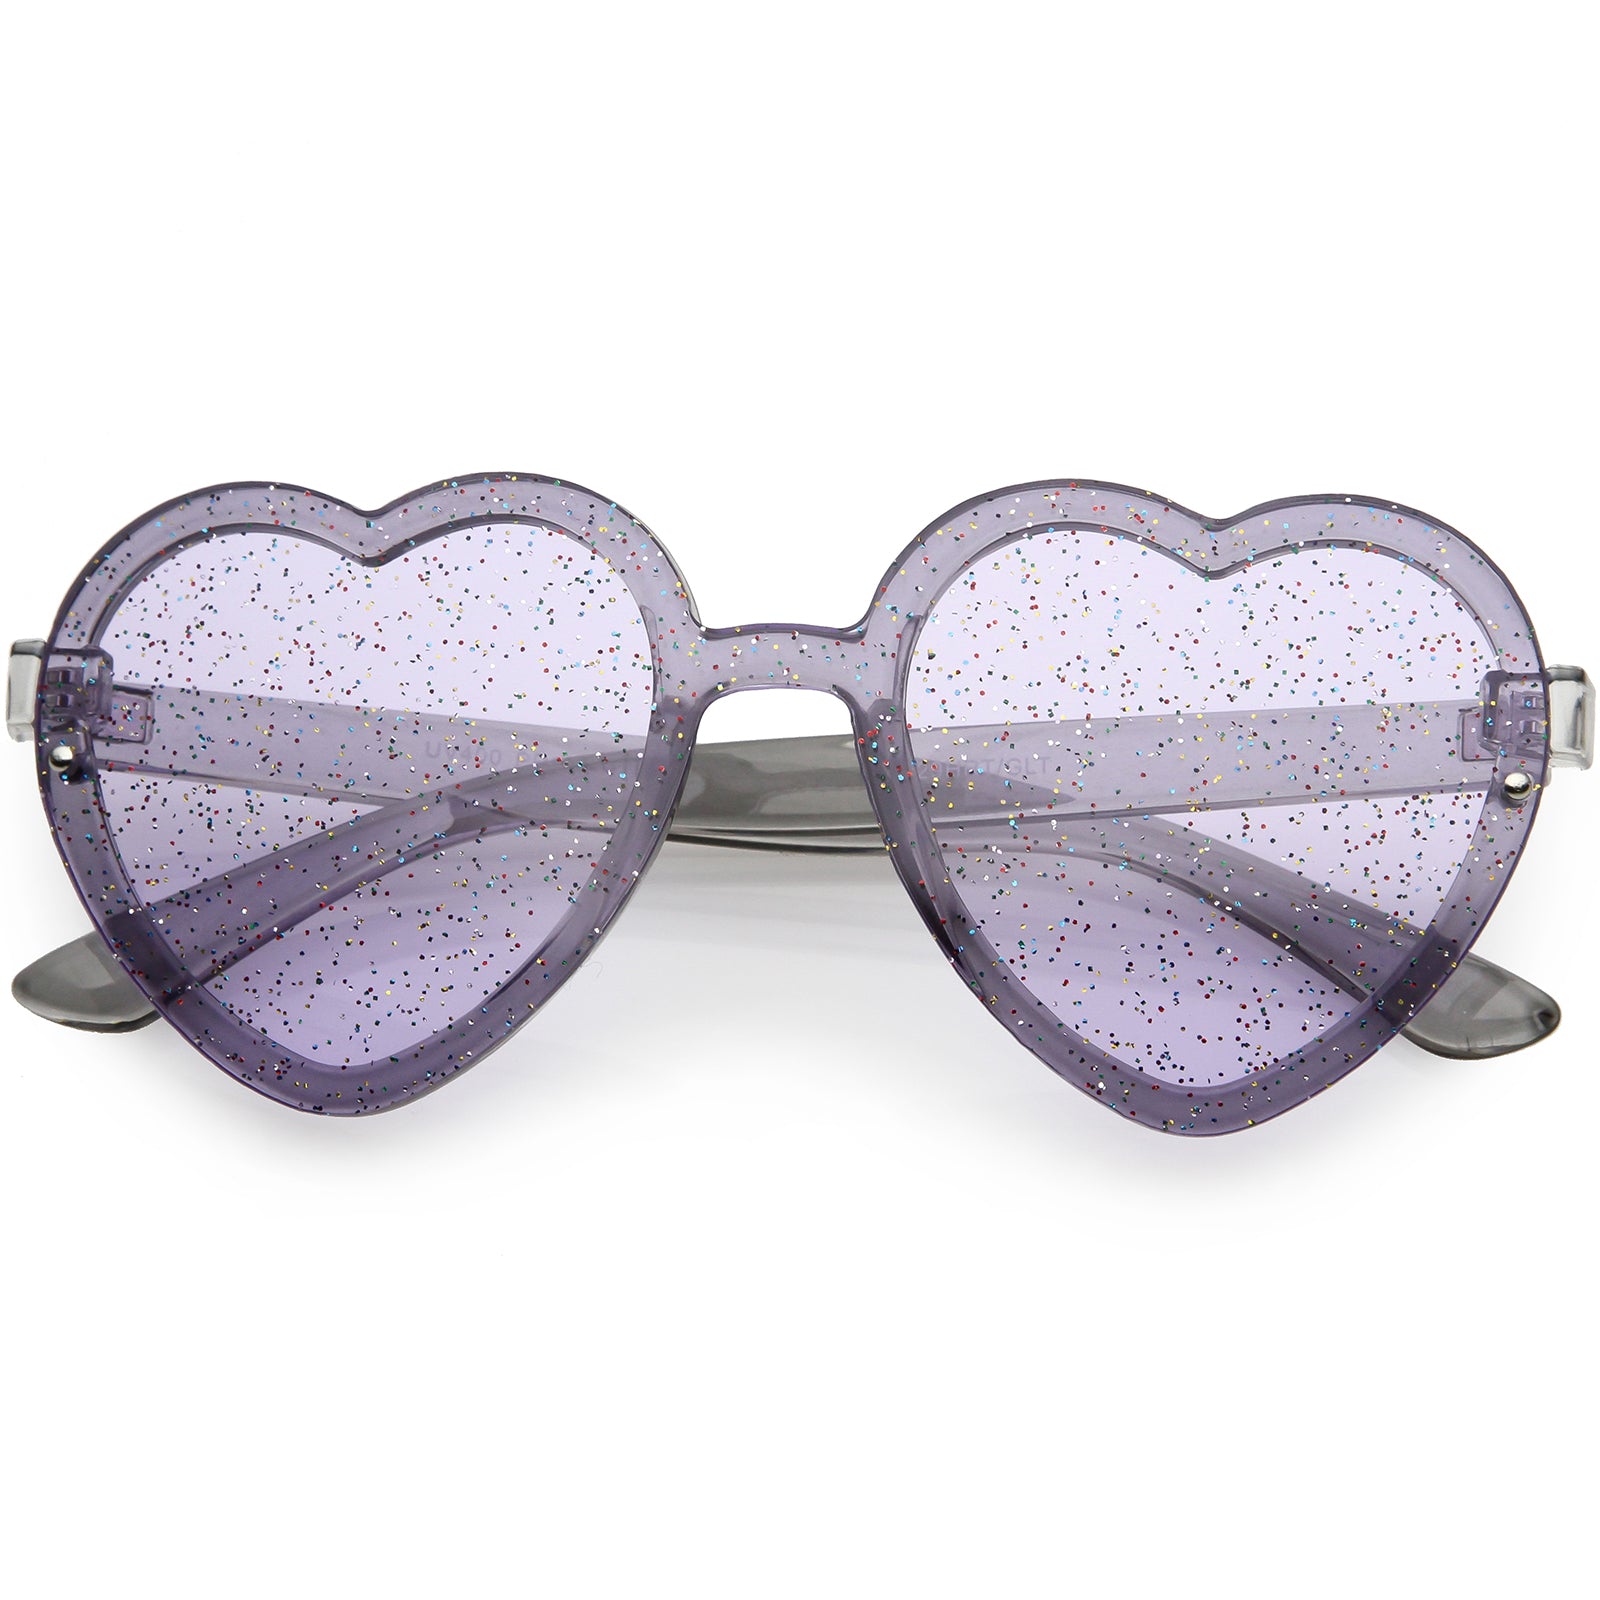 Cute Heart-shaped Frameless Sunglasses For Kids - Uv Protection